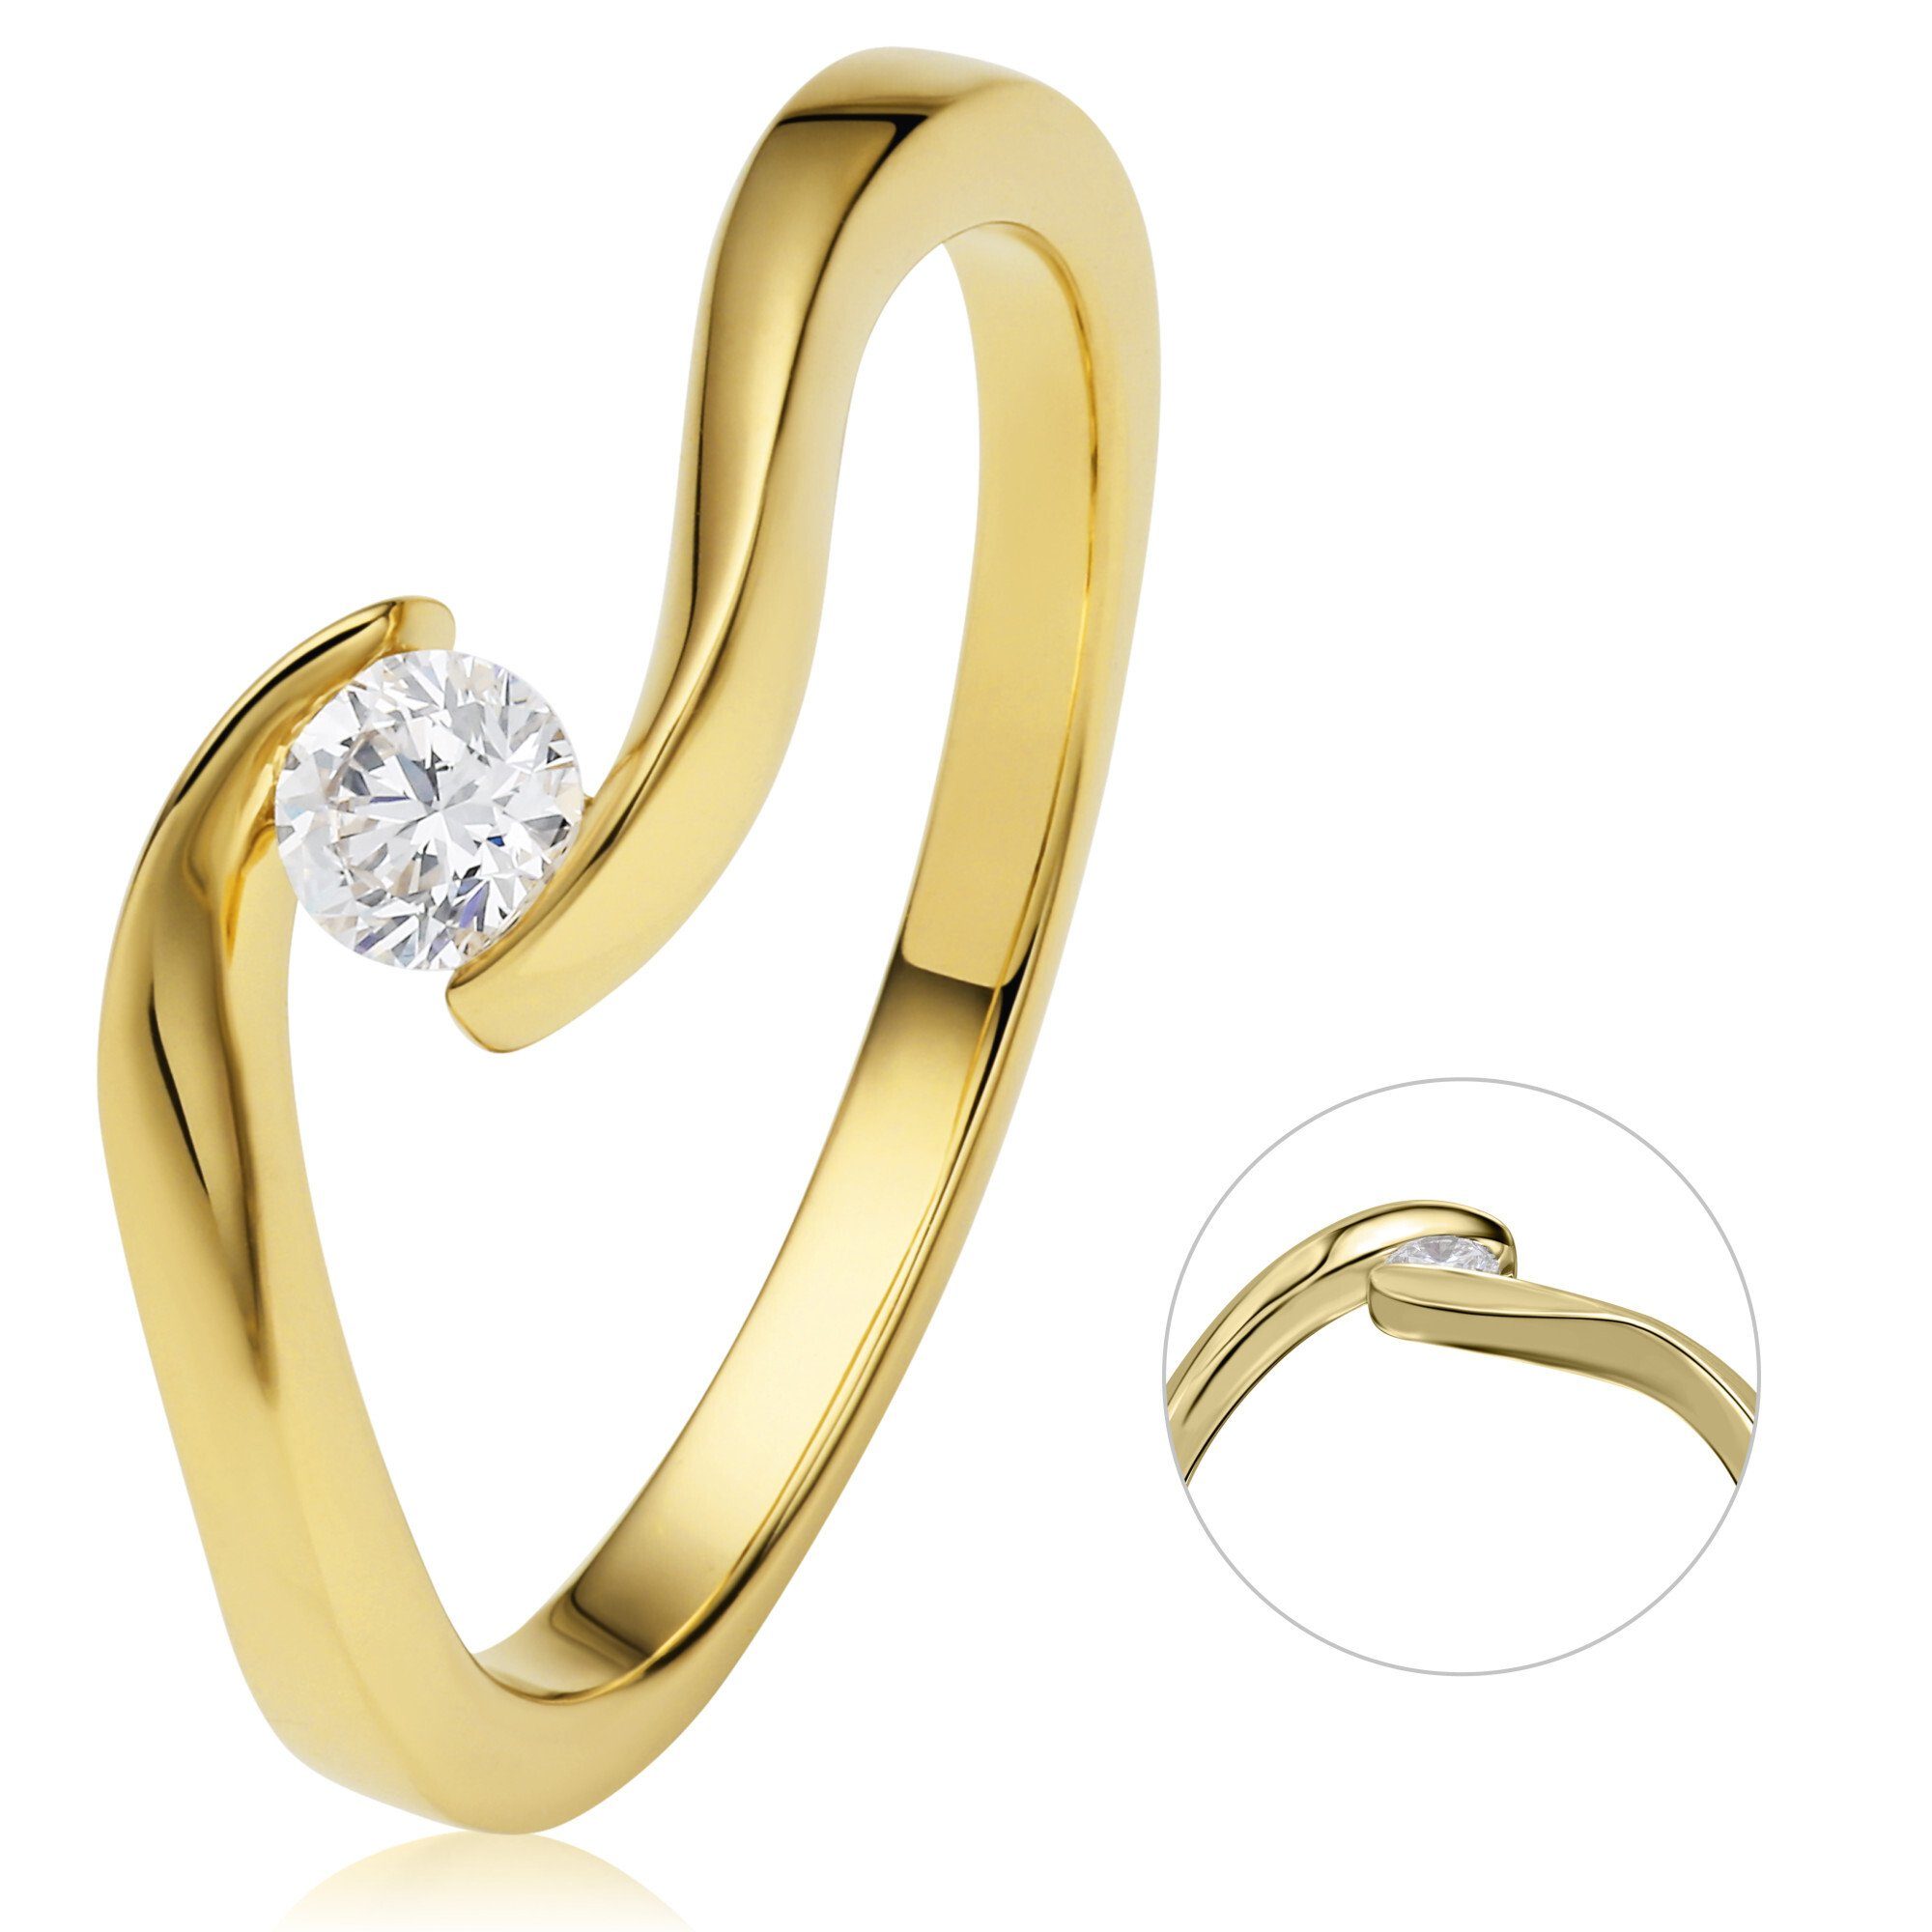 ONE ELEMENT Diamantring 0,20 ct Diamant Brillant Spannfassung Ring aus 585 Gelbgold, Damen Gold Schmuck Spannfassung